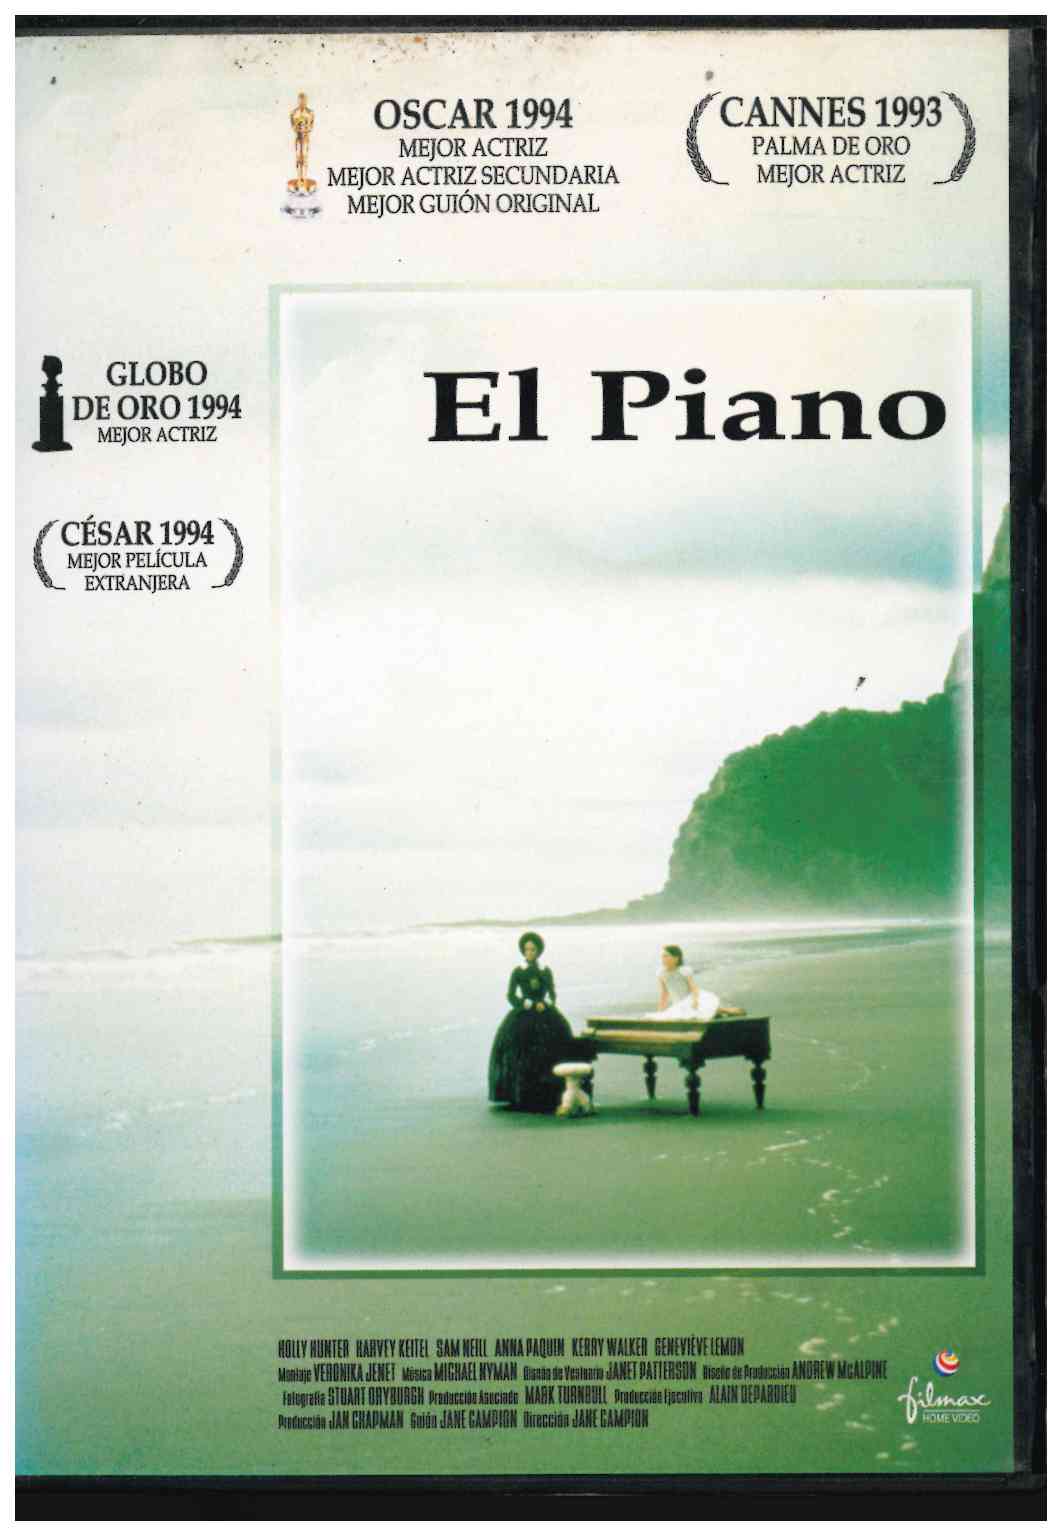 El piano. Filmax Home Video